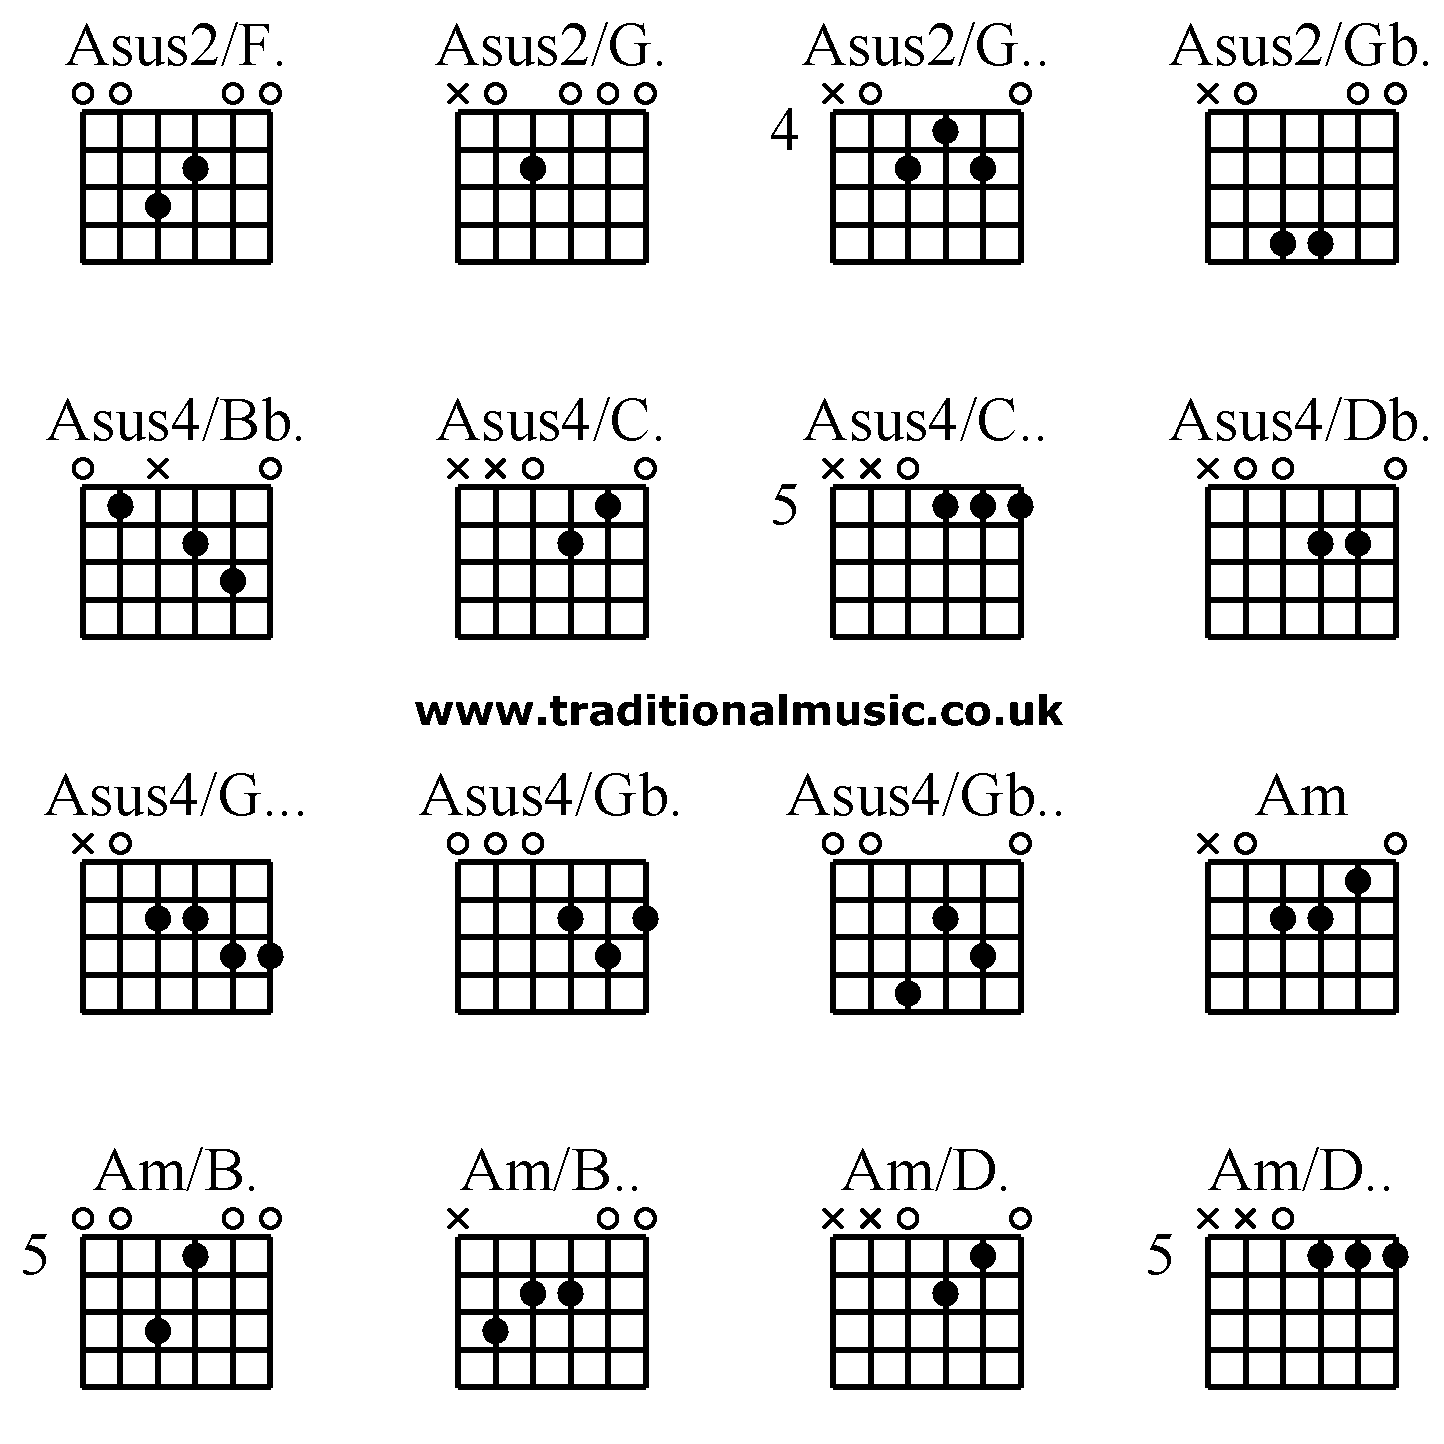 Advanced guitar chords: Asus2/F. Asus2/G. Asus2/G.. Asus2/Gb. ,Asus4/Bb. Asus4/C. Asus4/C.. Asus4/Db. Asus4/G... Asus4/Gb. Asus4/Gb.. Am